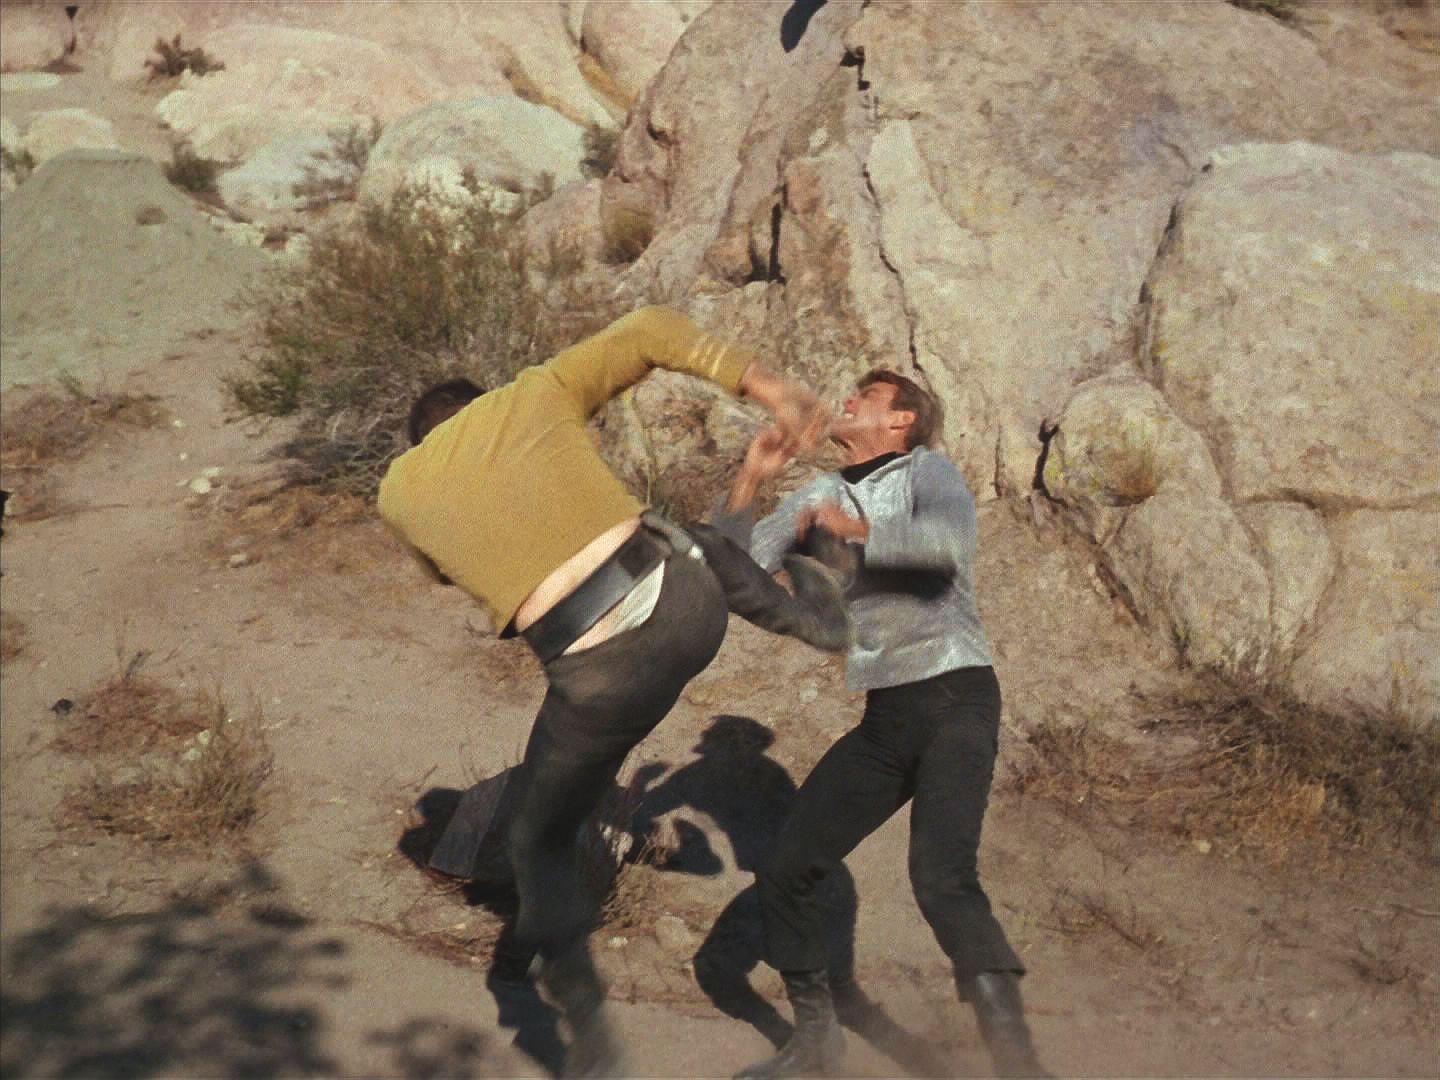 Kirk se ve rvačce trváním hodné Gregoryho Pecka a Charltona Hestona ve Velké zemi snaži dostat z Finnegana, co se to na planetě děje, ale nemá úspěch.